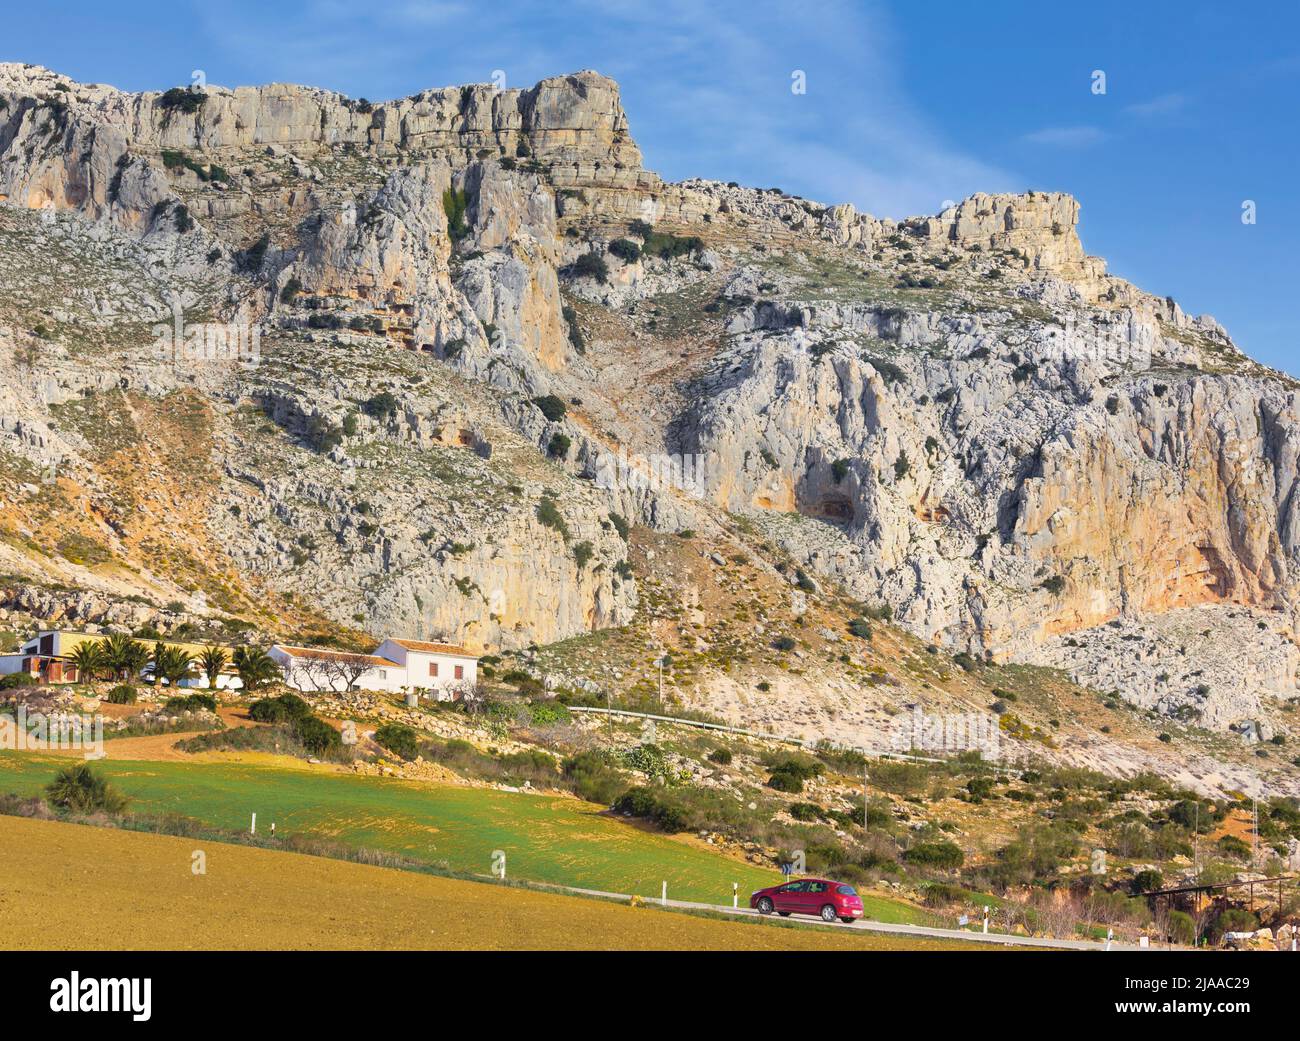 El Torcal, Provincia di Malaga, Andalusia, Spagna meridionale. El Torcal de Antequera è famoso per le sue formazioni rocciose carsiche. Fa parte della Sierra del T. Foto Stock